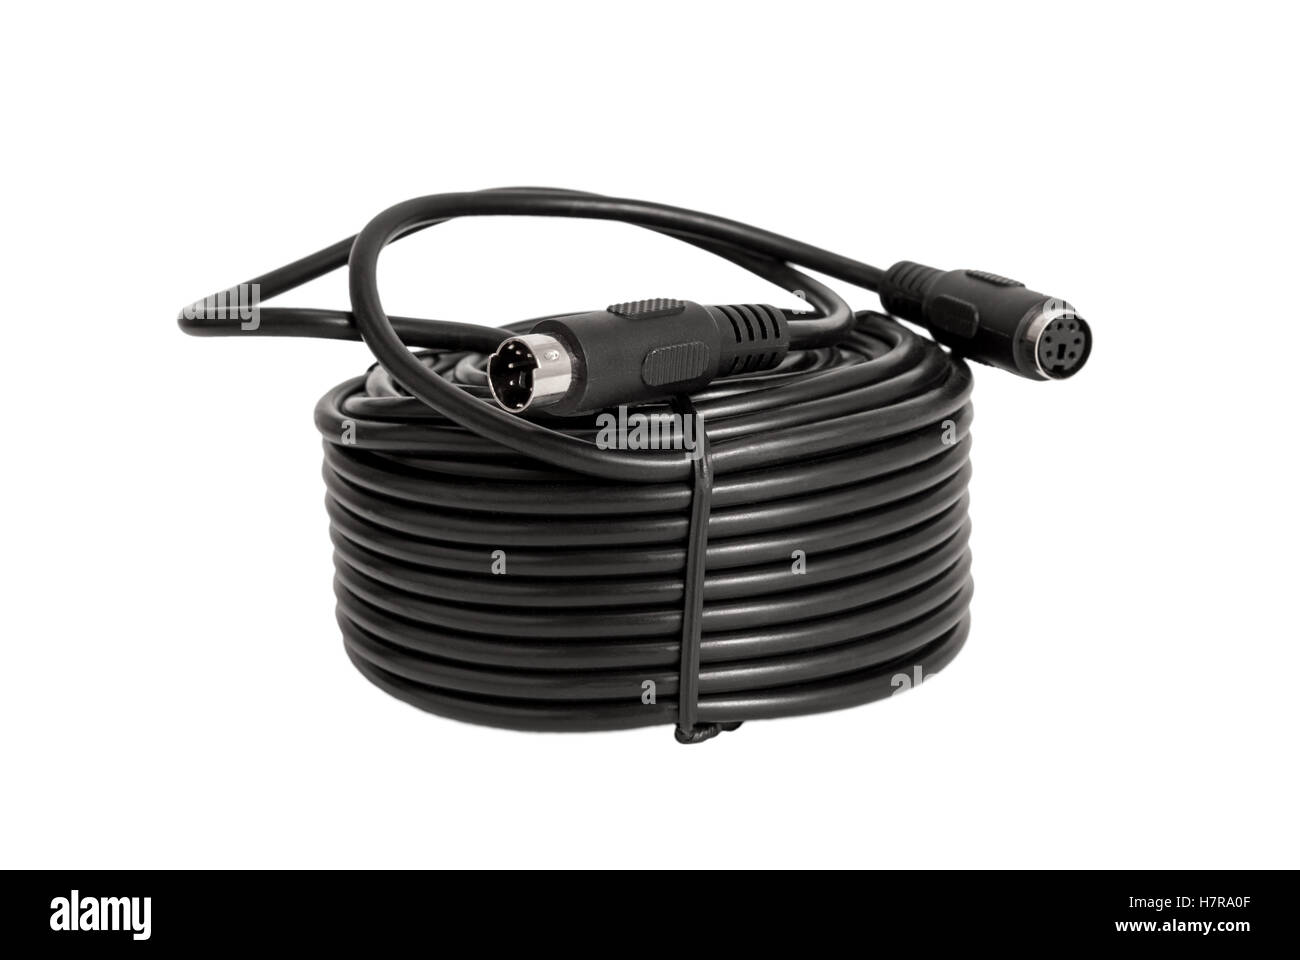 Collection électronique - des câbles coaxiaux avec des connecteurs PS2 pour caméras de surveillance (CCTV) isolé sur fond blanc Banque D'Images